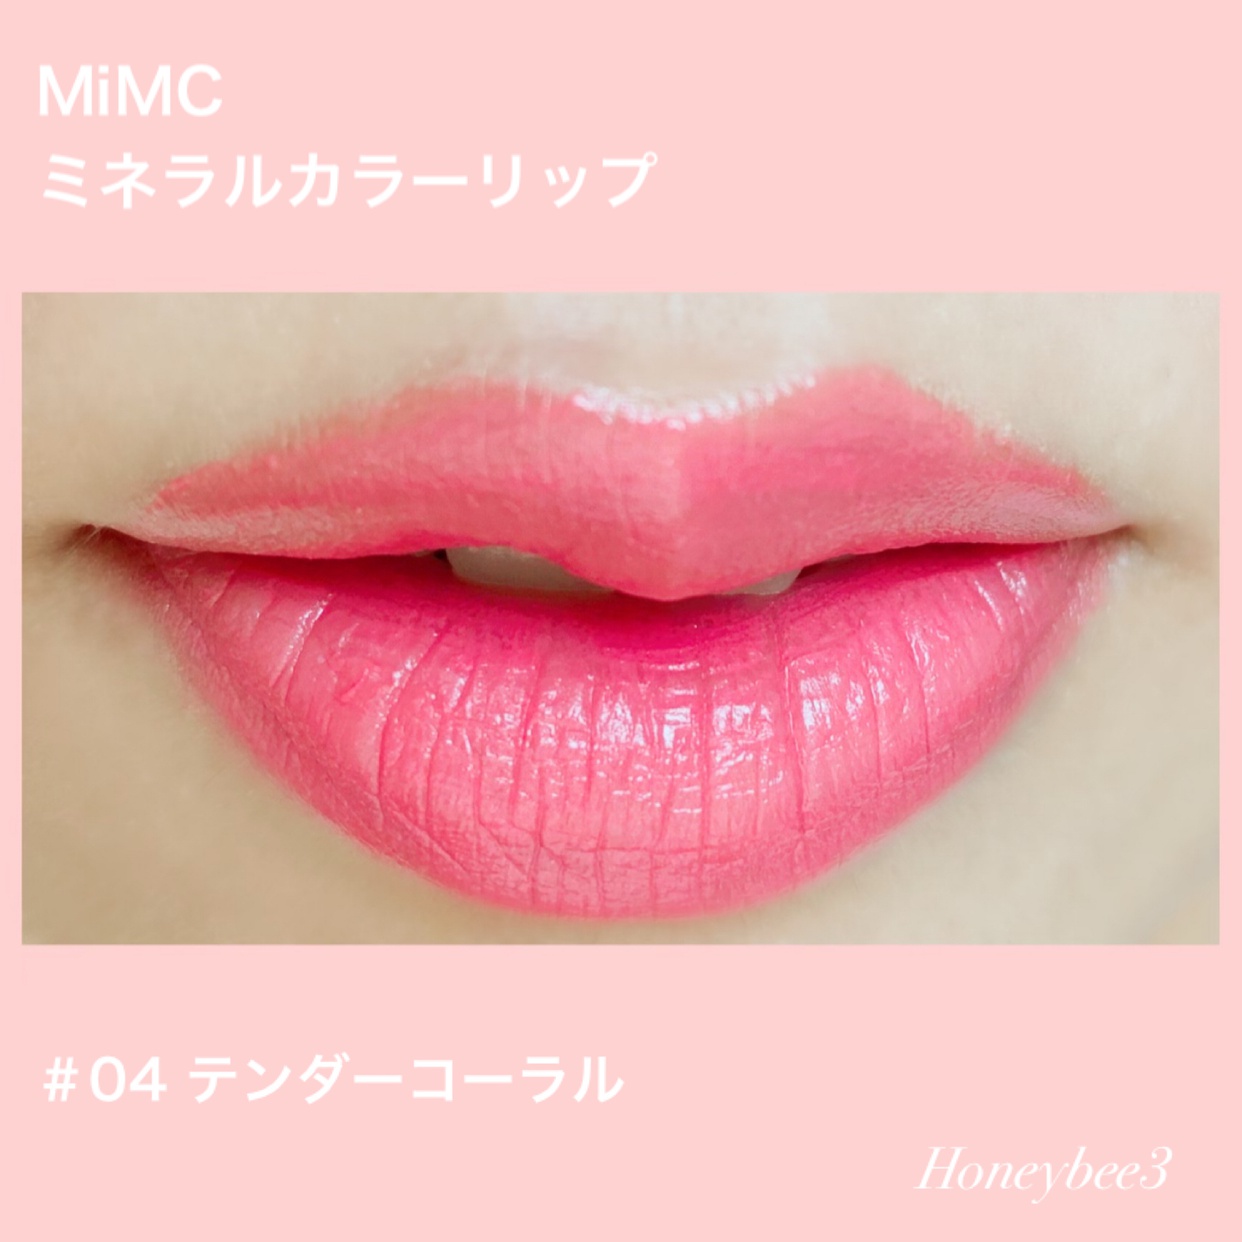 MiMC(エムアイエムシー) ミネラルカラーリップの良い点・メリットに関するみつばちさんの口コミ画像2